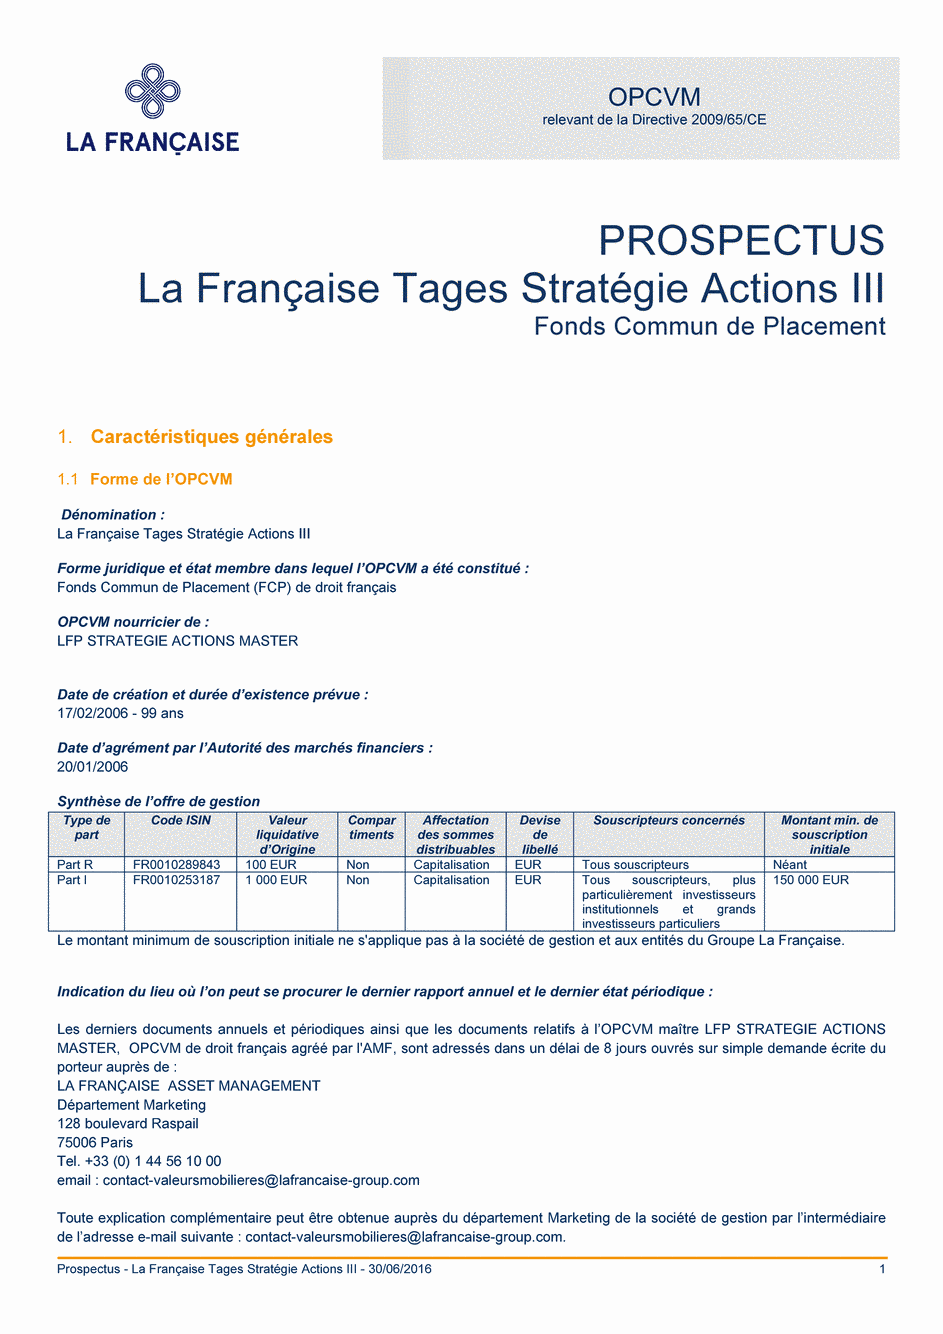 Prospectus La Française Tages Stratégie Actions III - Part I - 30/06/2016 - Français